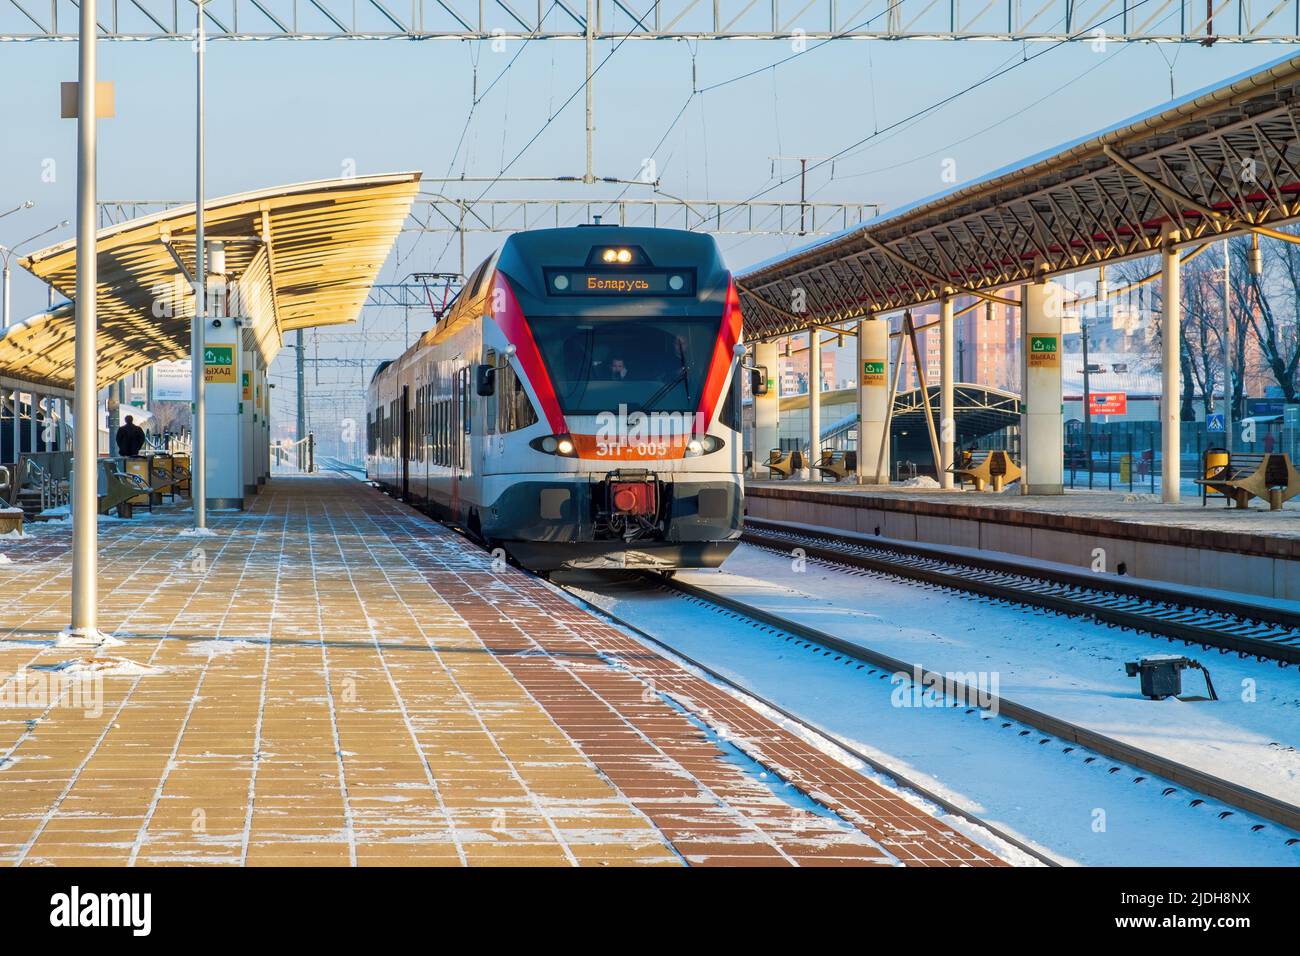 Minsk, Bélarus - 22 janvier 2018: Train électrique des lignes de la ville à la gare. Une plate-forme vide. Une journée d'hiver claire Banque D'Images